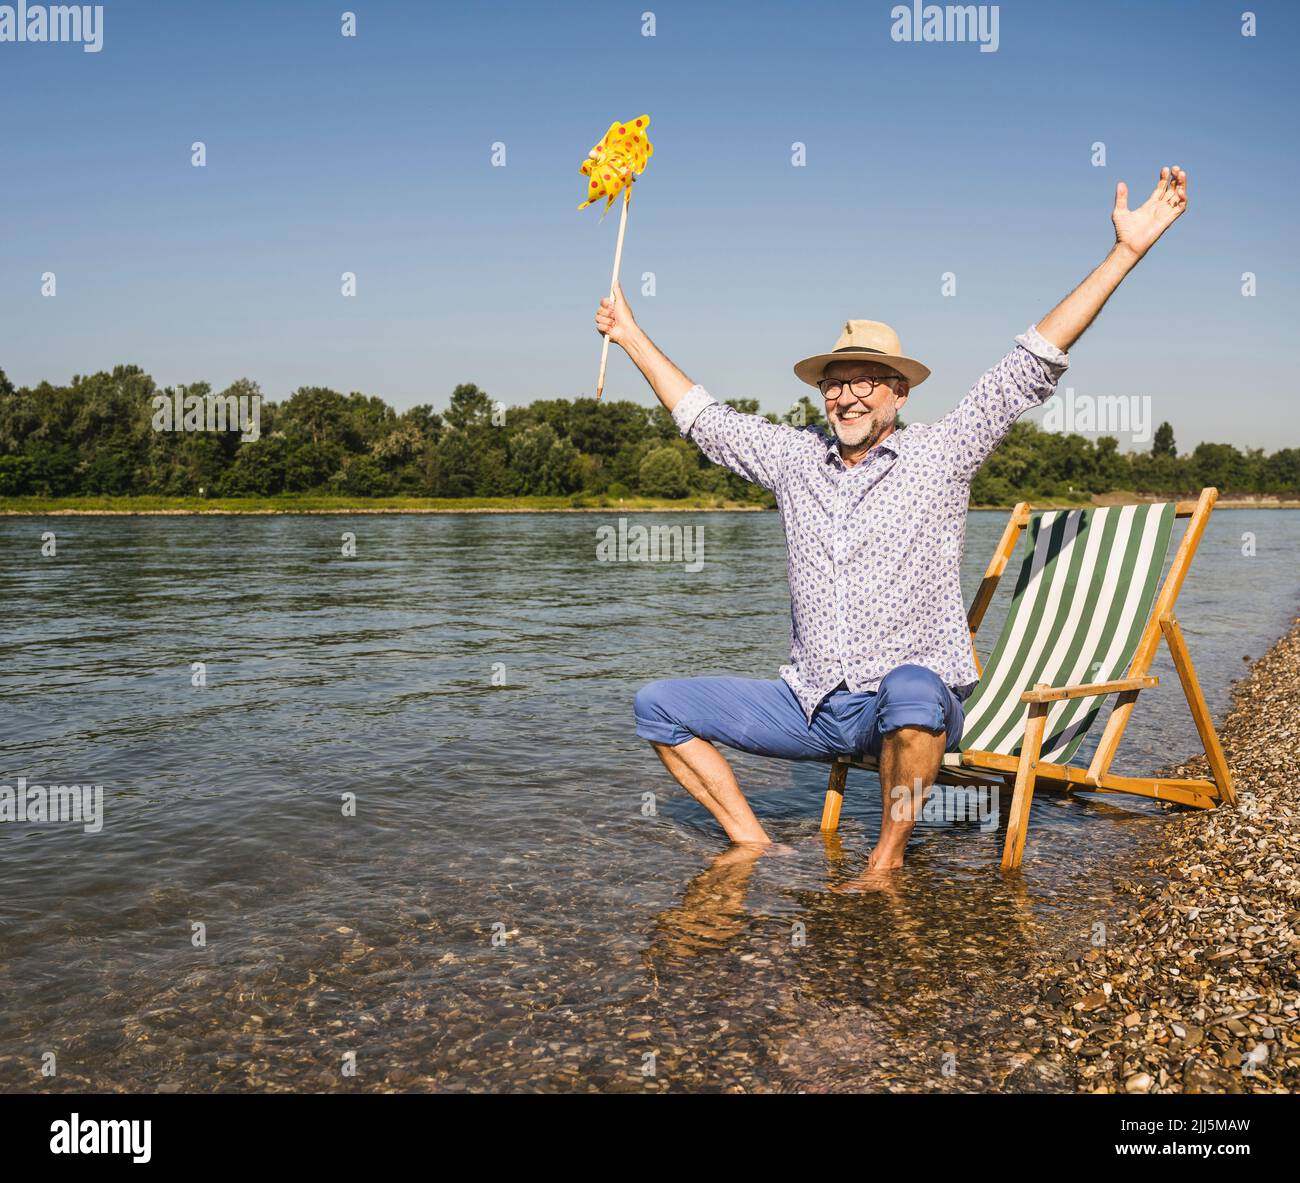 Glücklicher Mann mit ausgestreckten Armen, der am Flussufer ein Spielzeug aus Papierrad hält Stockfoto